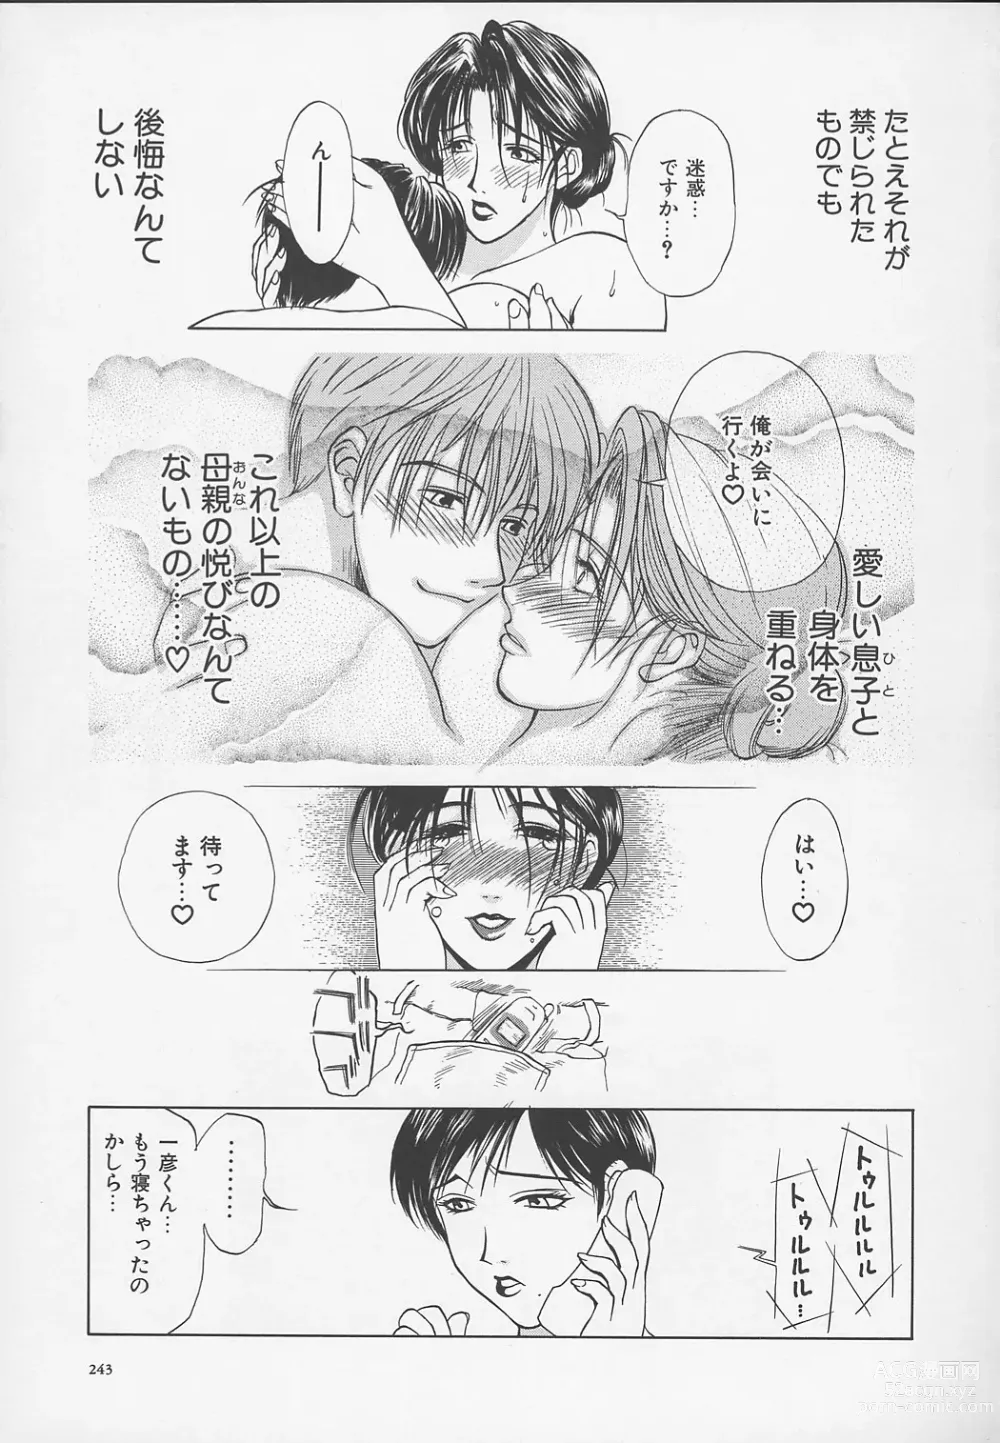 Page 246 of manga Enbo -Kanzenban-